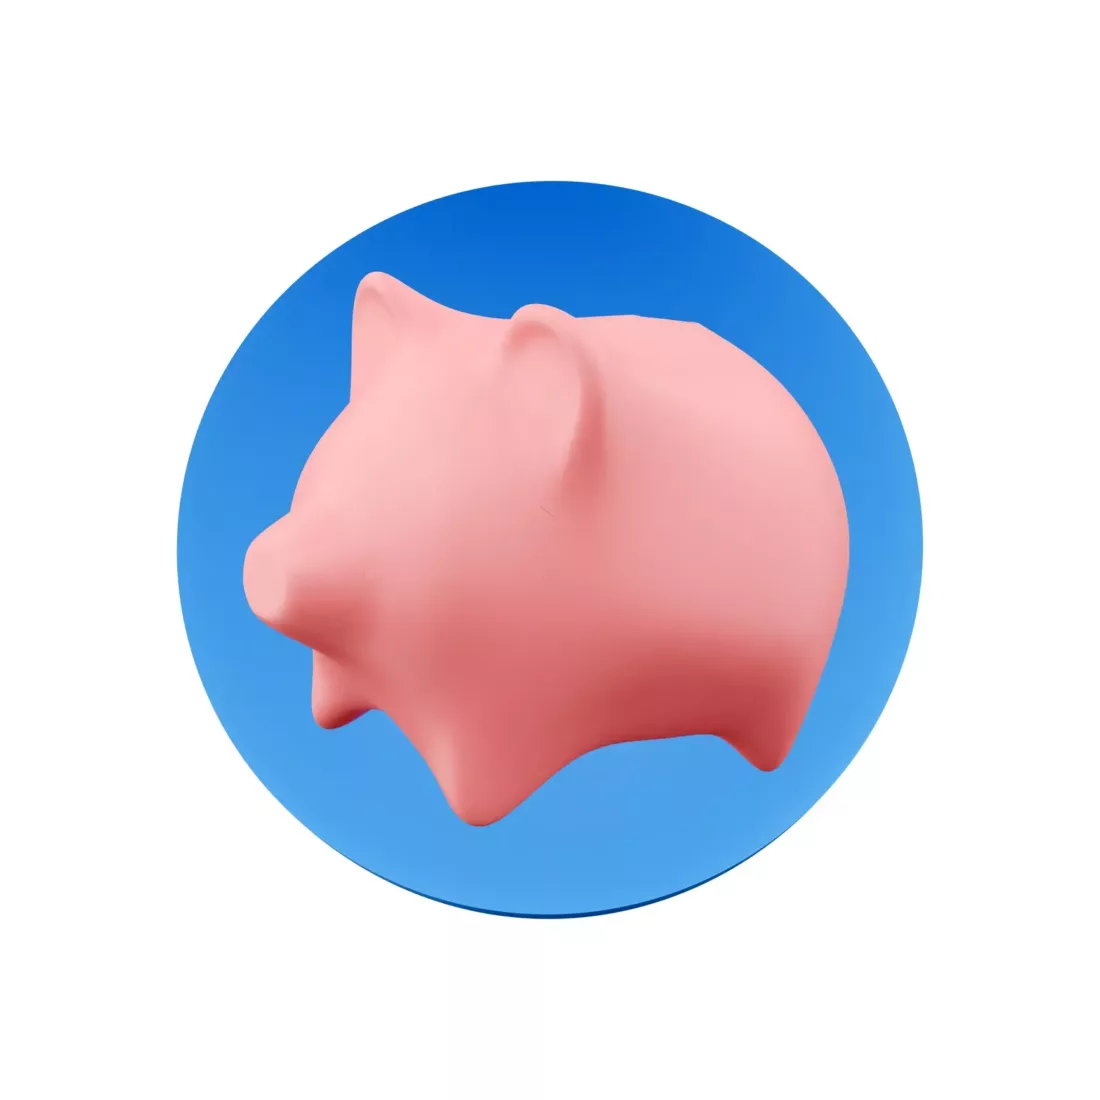 Piggy Bank 3D Render